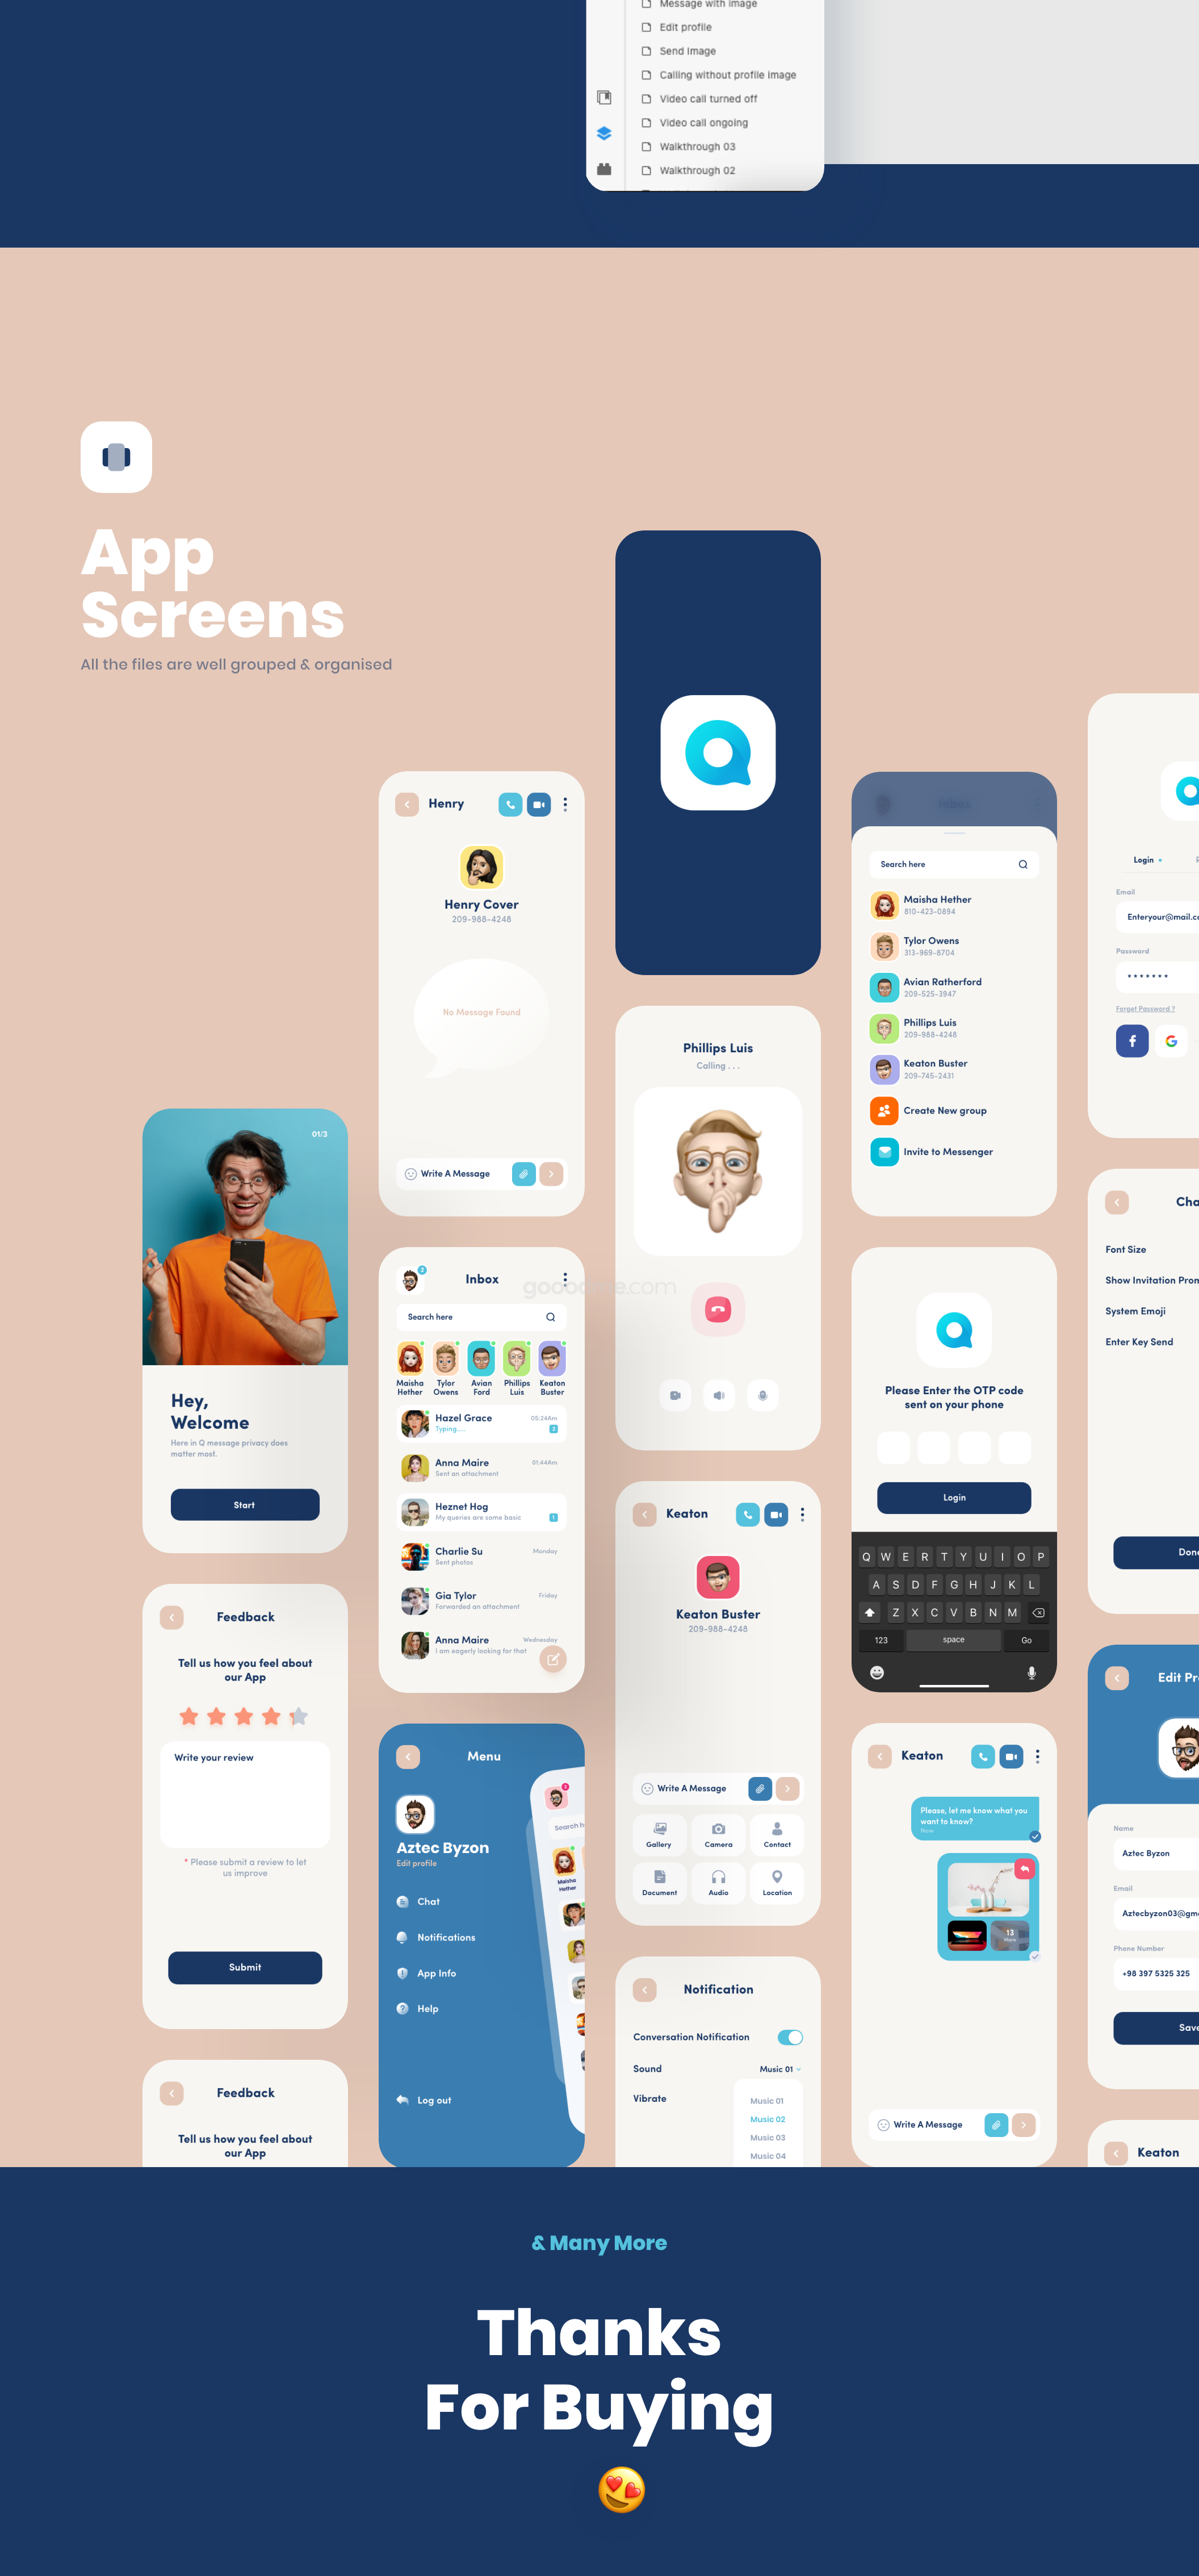 社交通讯软件app设计UI界面模板素材Q message